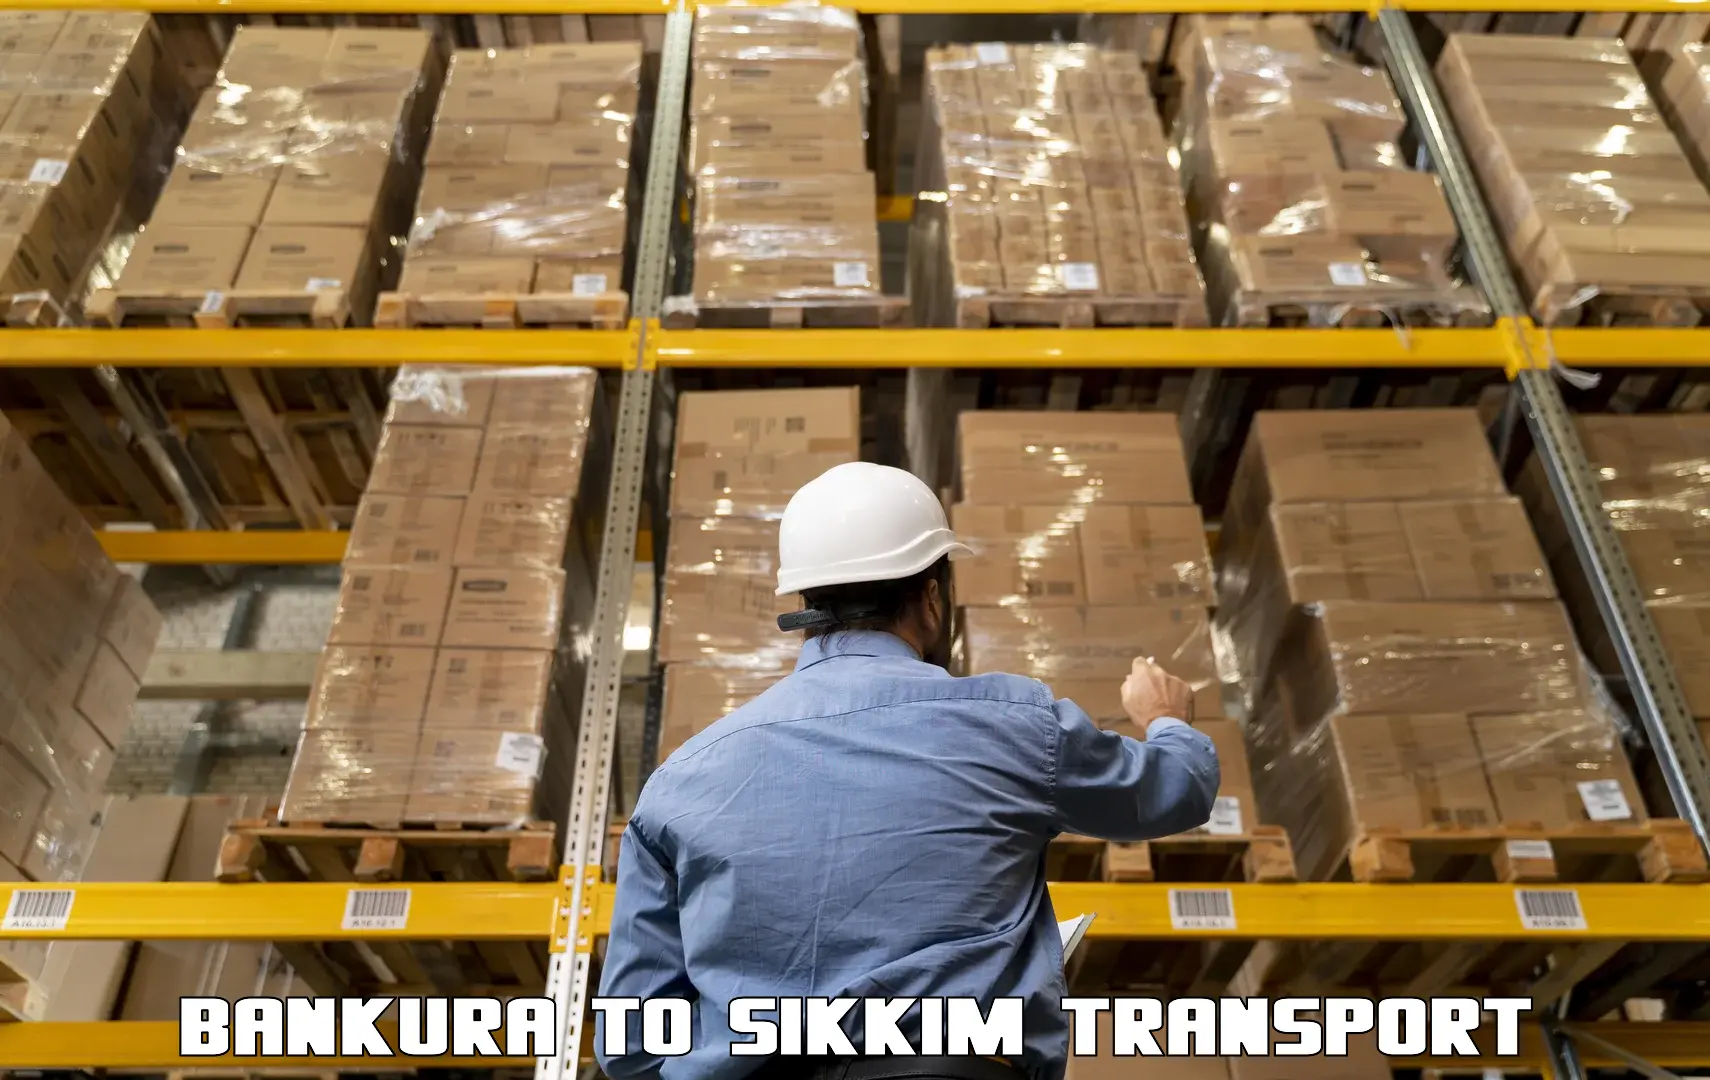 Delivery service Bankura to Singtam